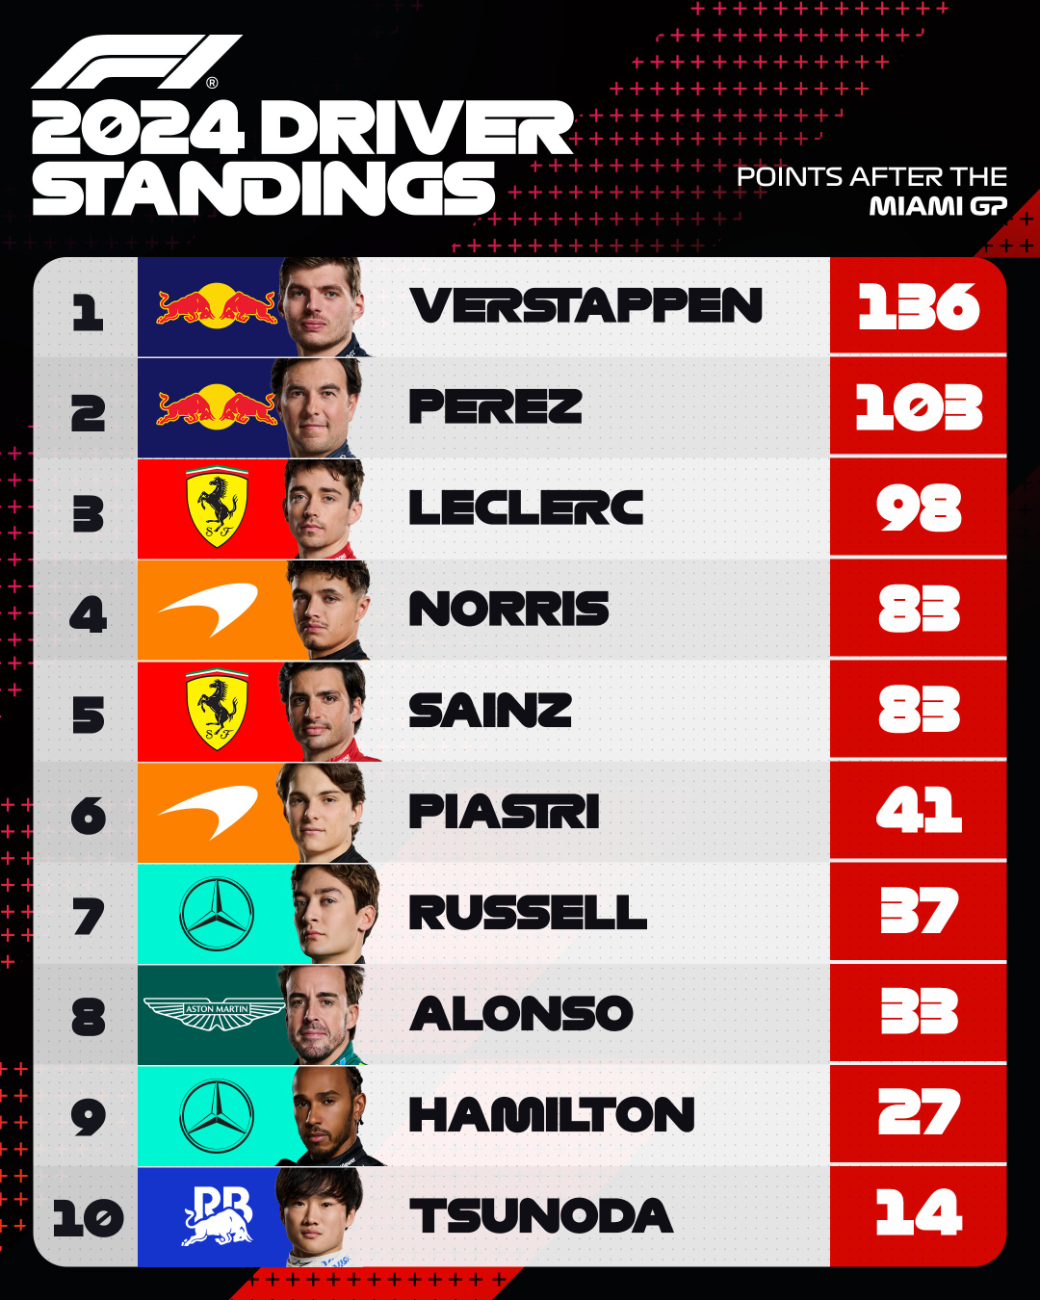 Max Verstappen encabeza la lista de pilotos con 136 puntos, 33 puntos arriba de Checo Pérez